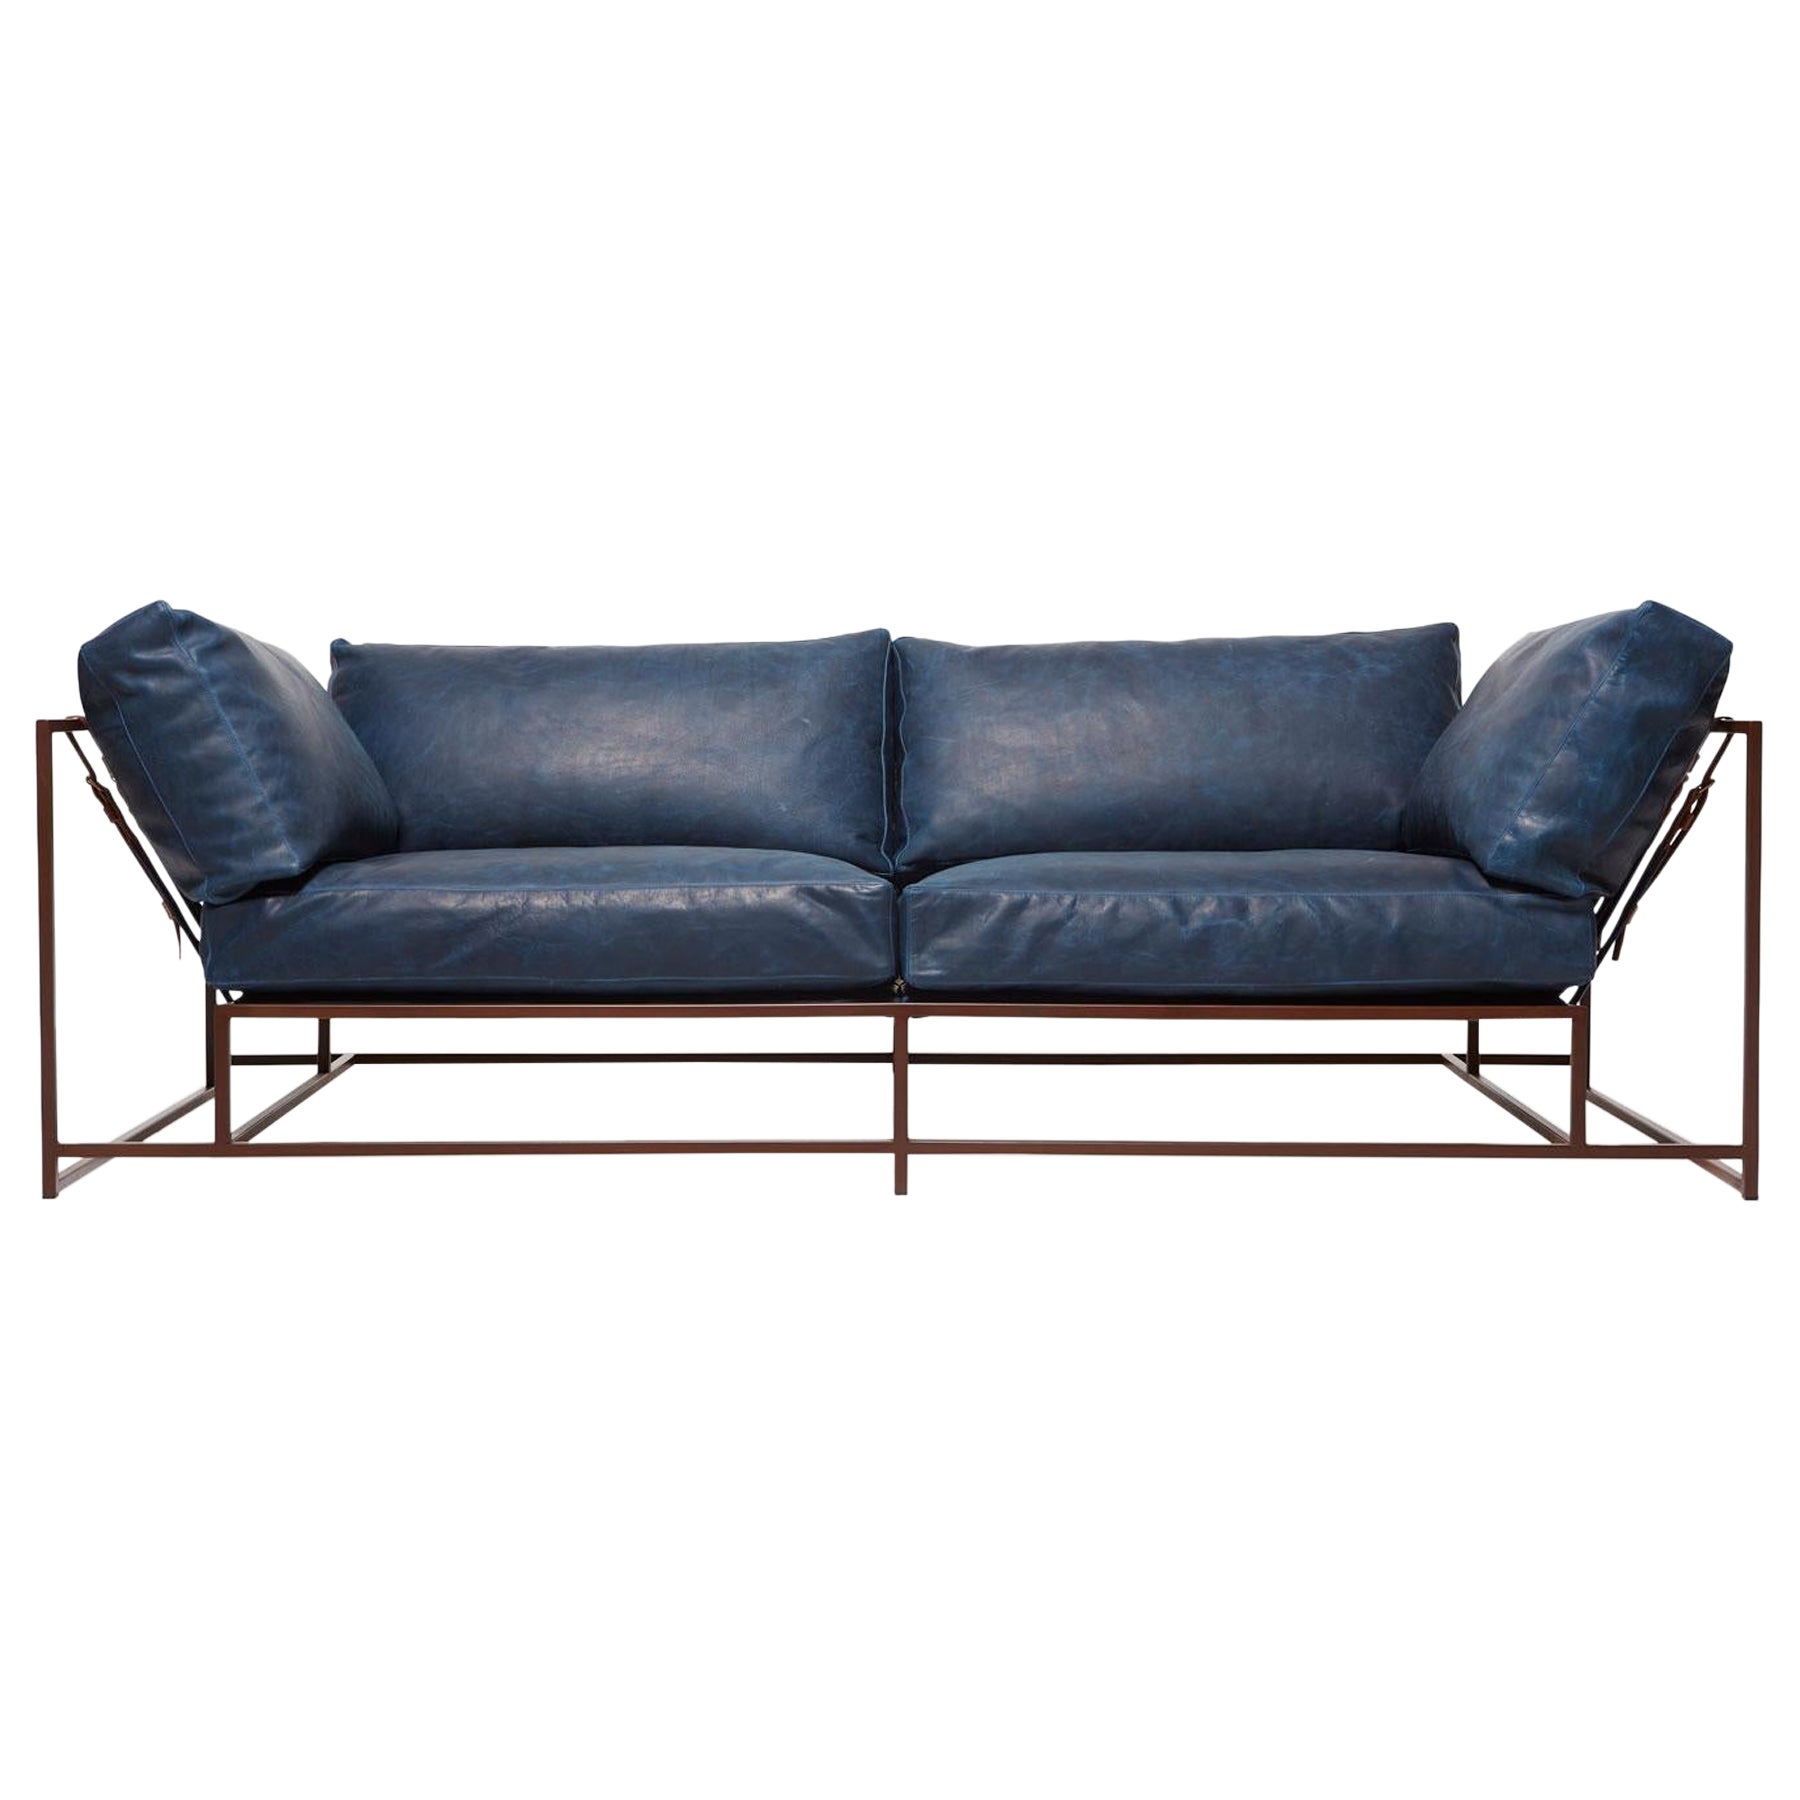 Zweisitziges Sofa aus gewachstem marineblauem Leder und marmoriertem rostfarbenem Leder